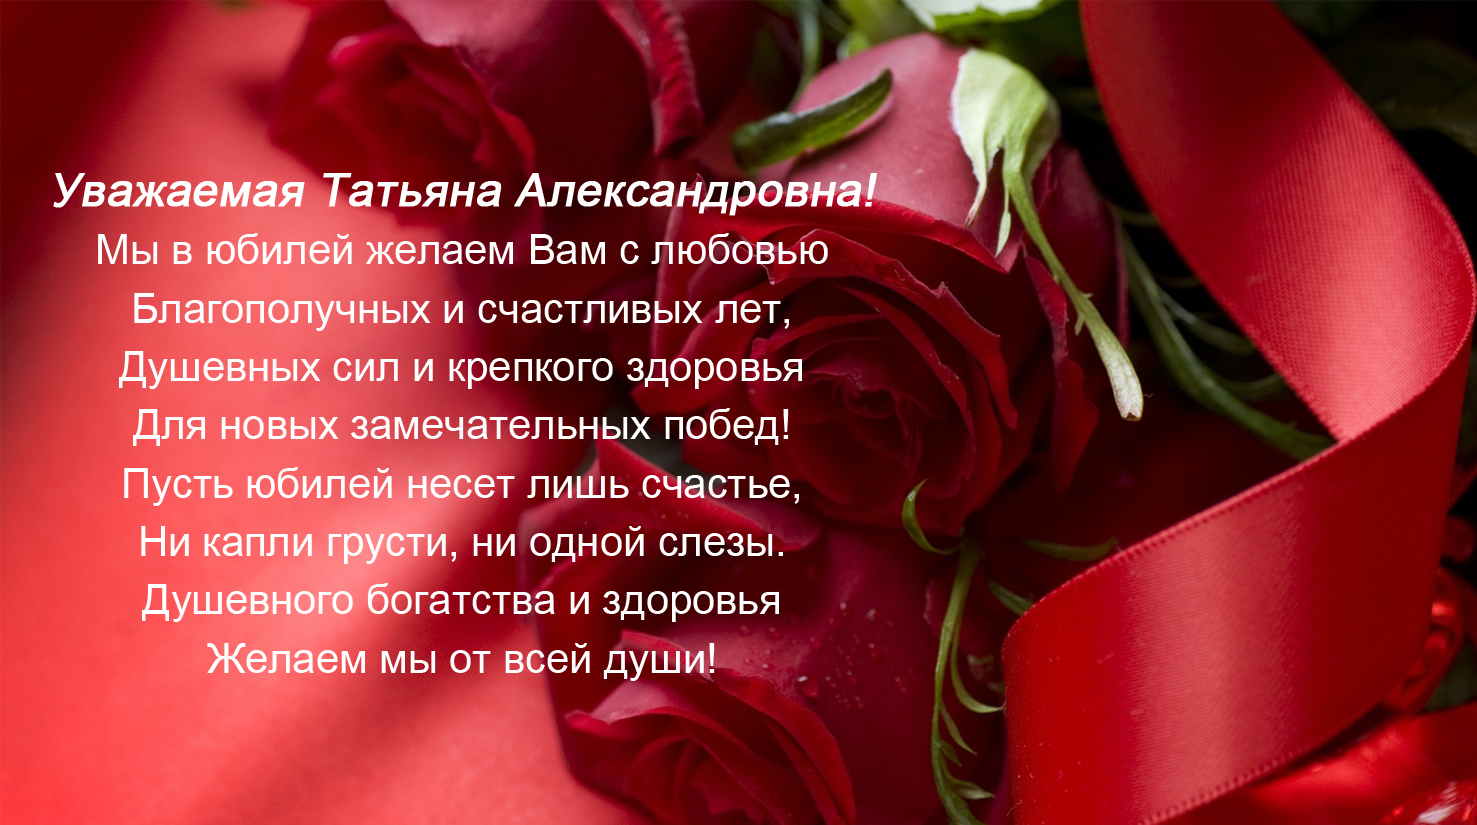 Поздравления Татьяне Анатольевне